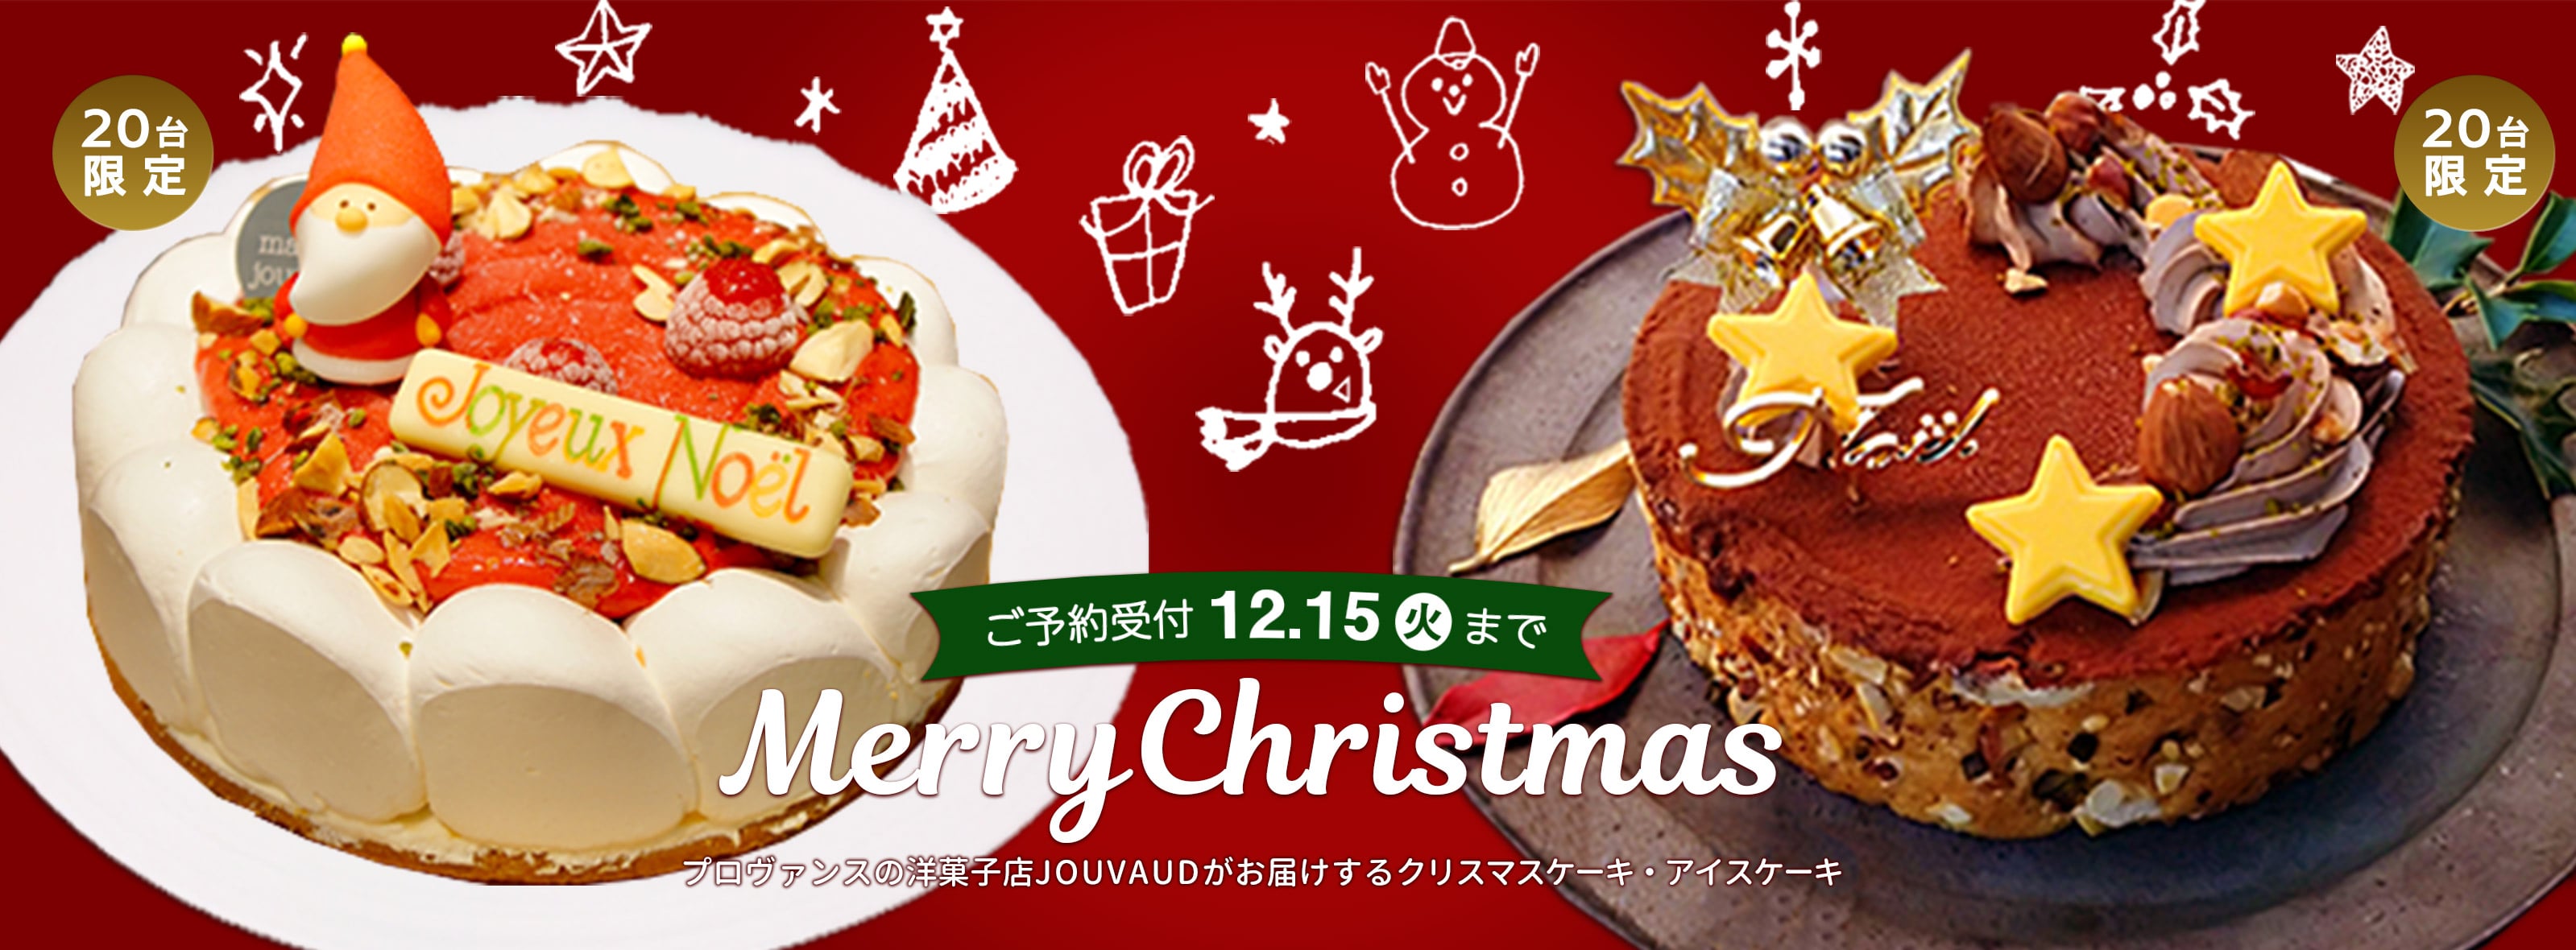 井村屋ウェブショップ クリスマスケーキ 並び順 価格 高い順 懐かしくても 新しい 心のこもった品質を